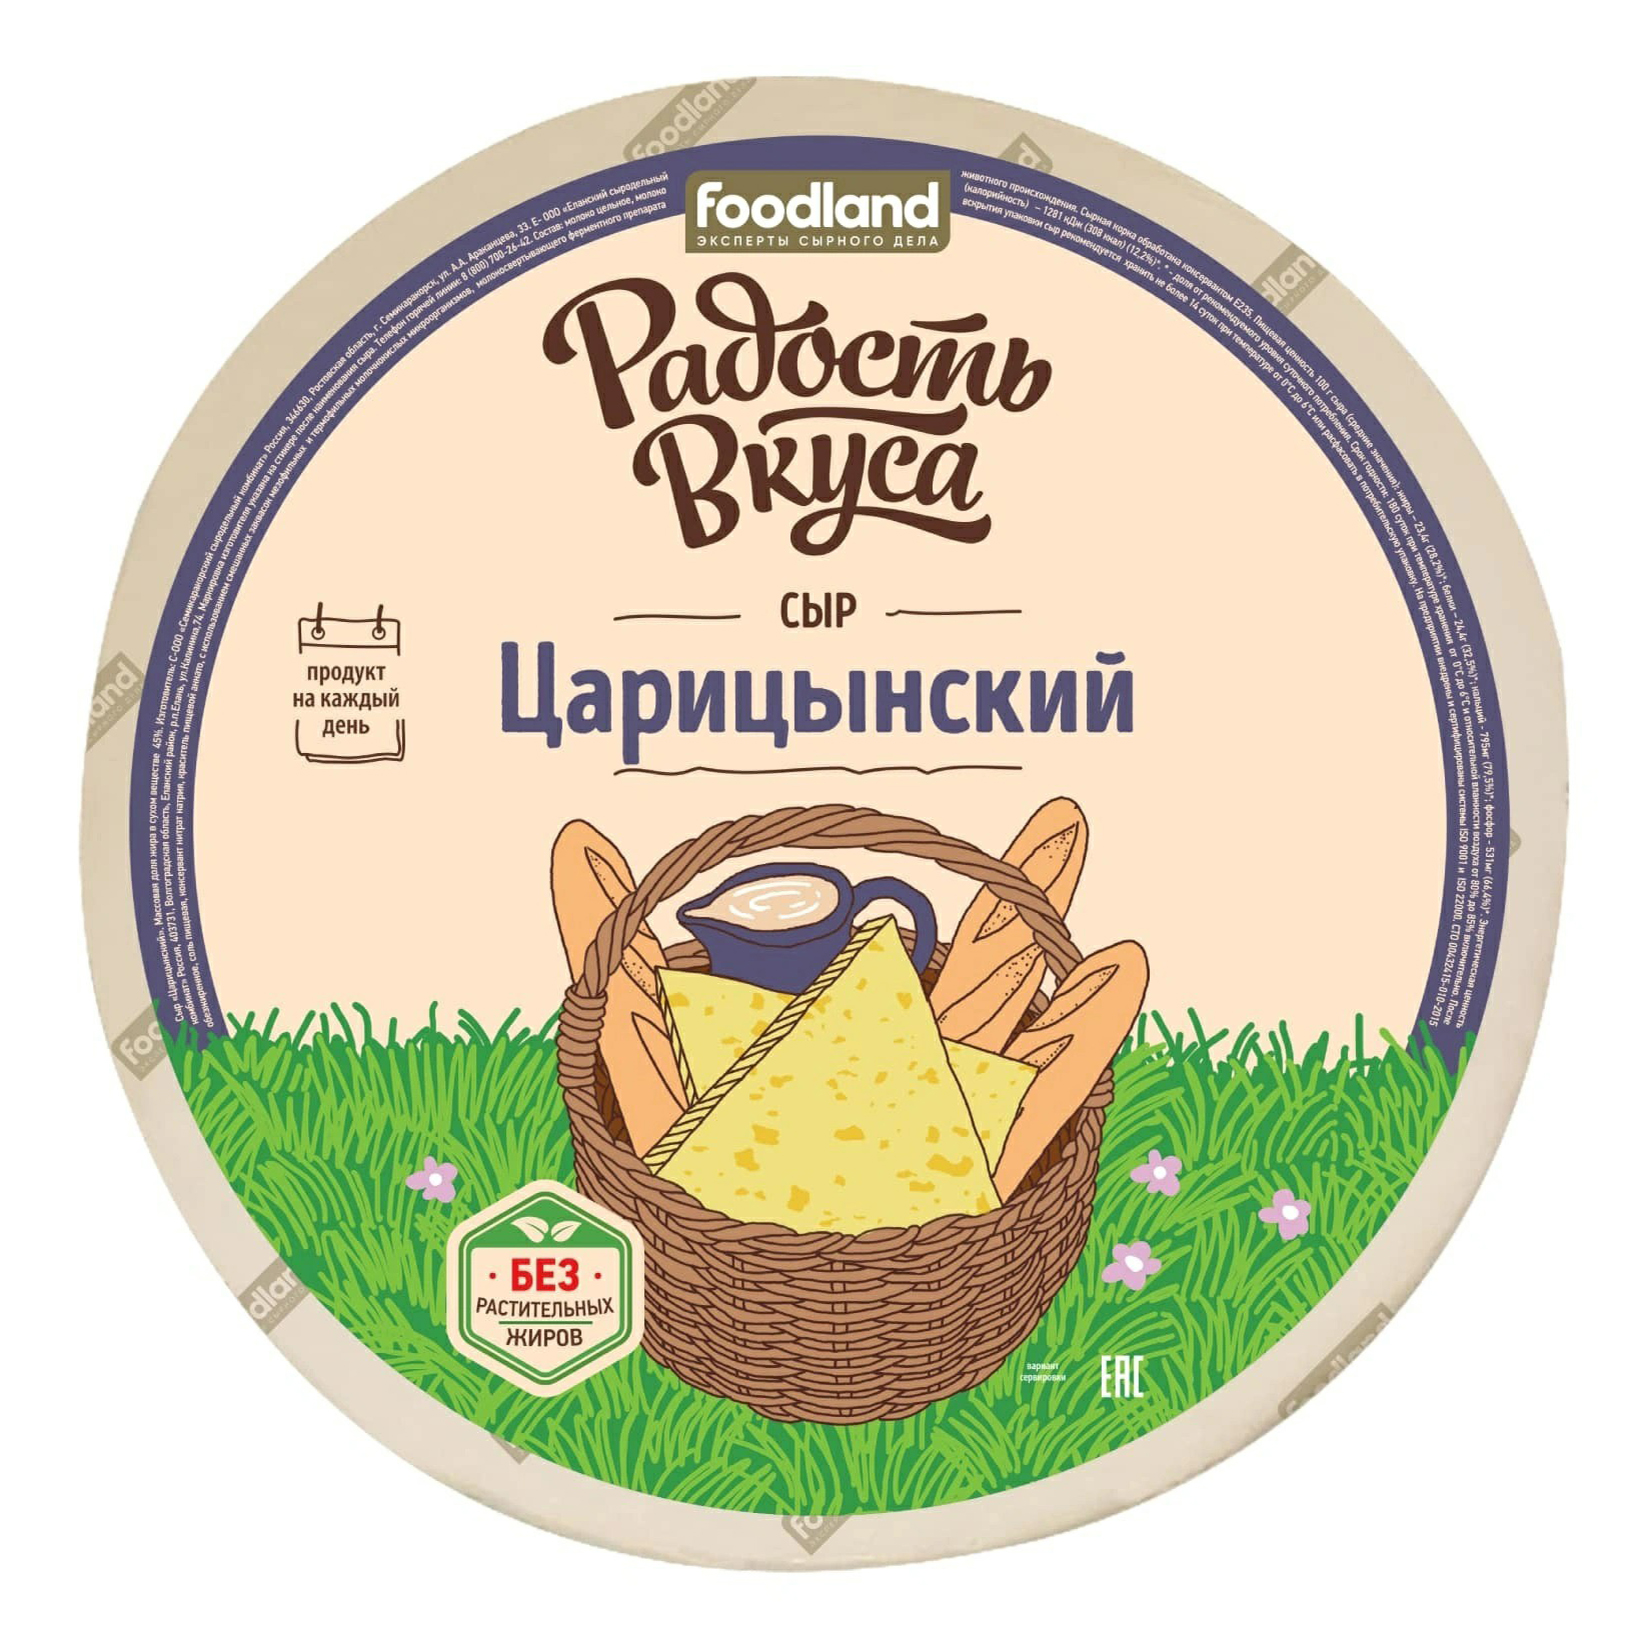 Сыр полутвердый Радость вкуса Царицынский 45% БЗМЖ